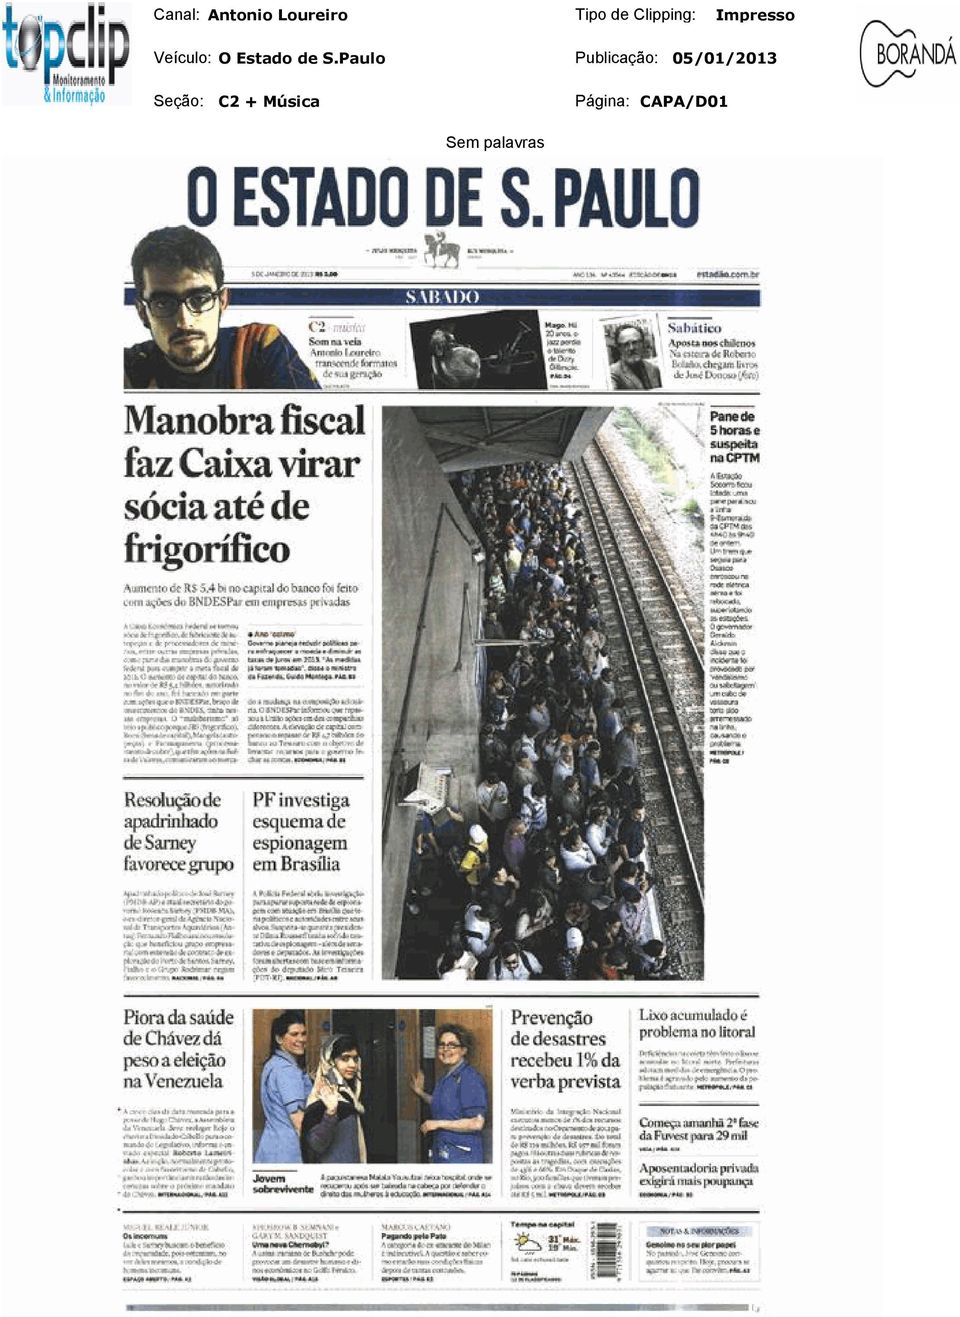 de S.Paulo Publicação: 05/01/2013